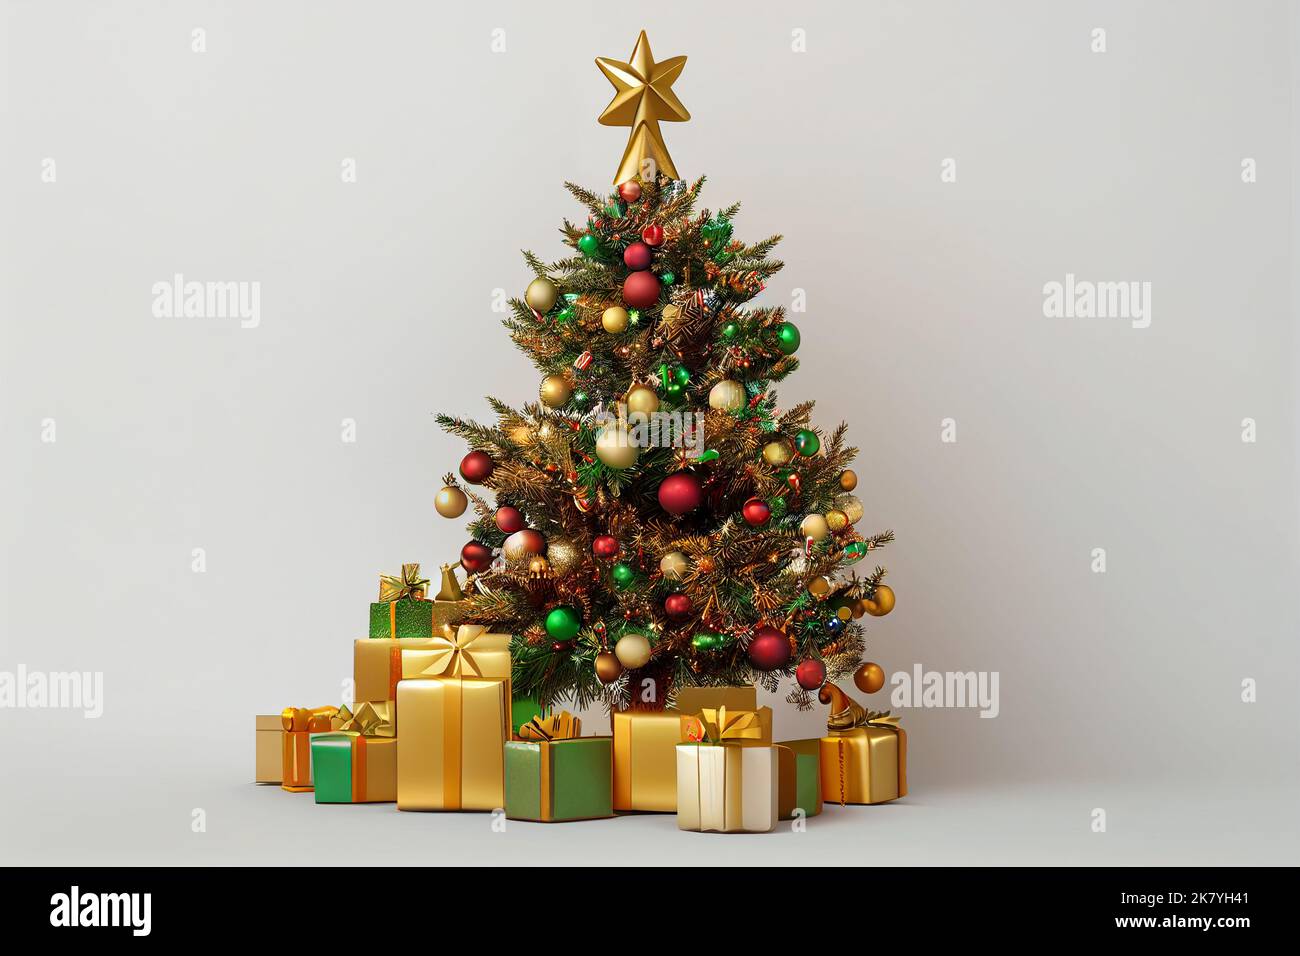 Weihnachtsbaum geschmückt mit bunten Kugeln und Geschenkboxen Stockfoto